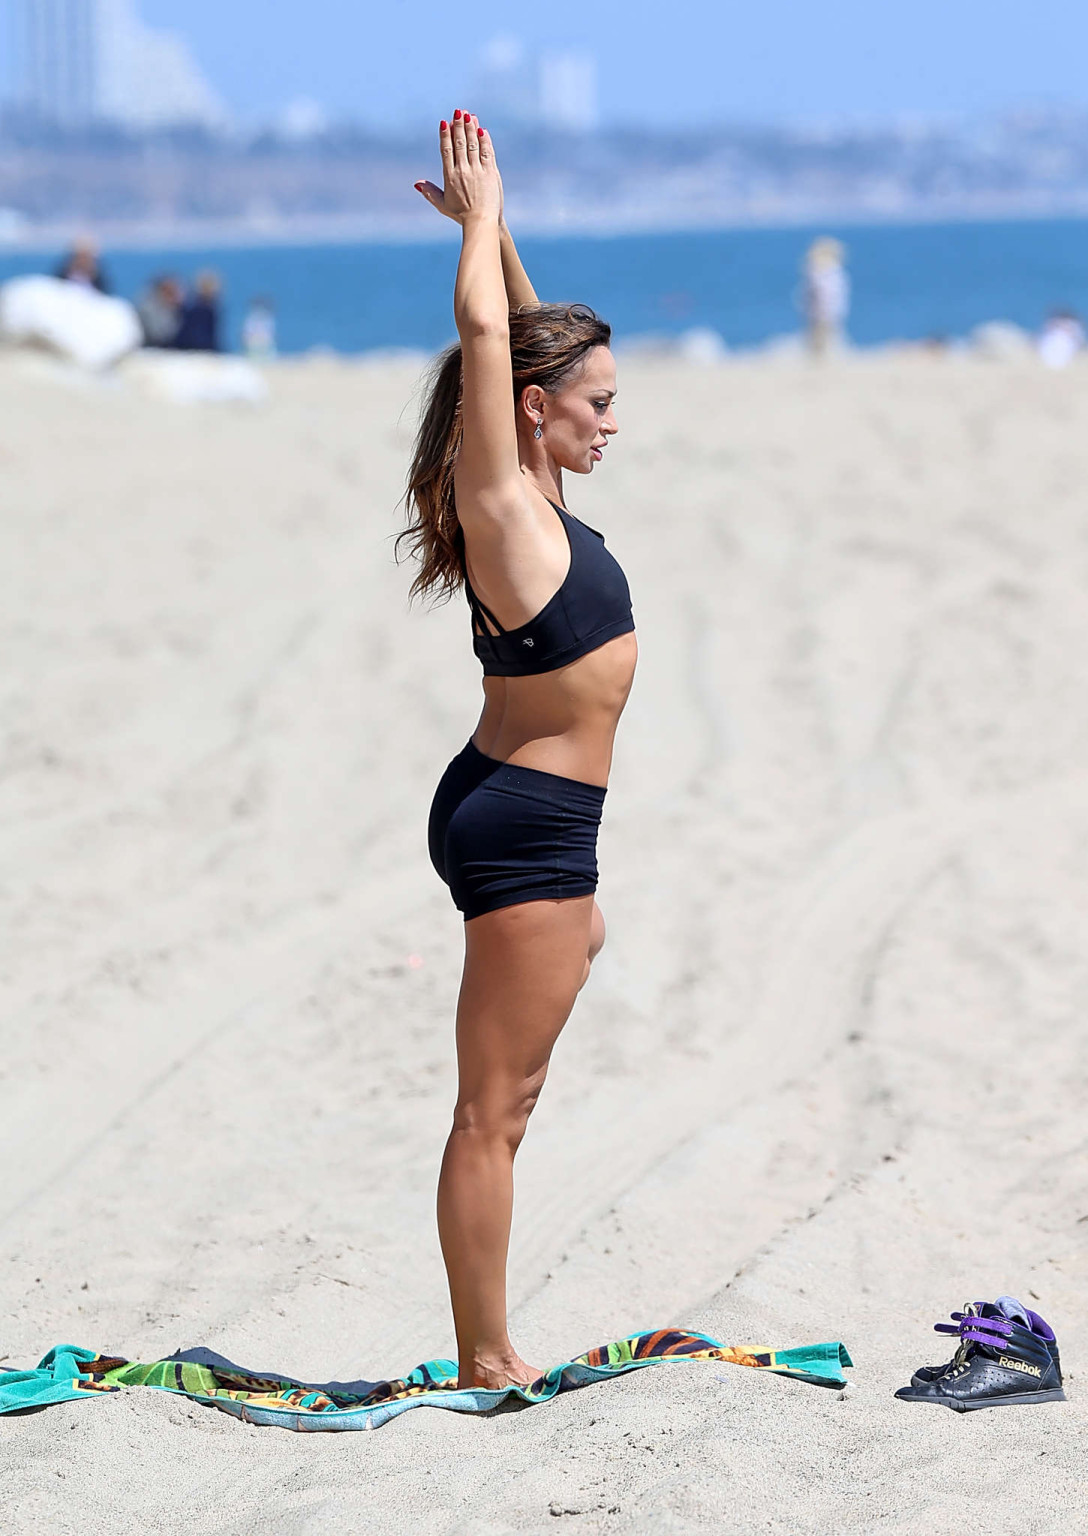 Karina smirnoff con sujetador deportivo y diminutos shorts mientras se ejercita en la playa en
 #75163108